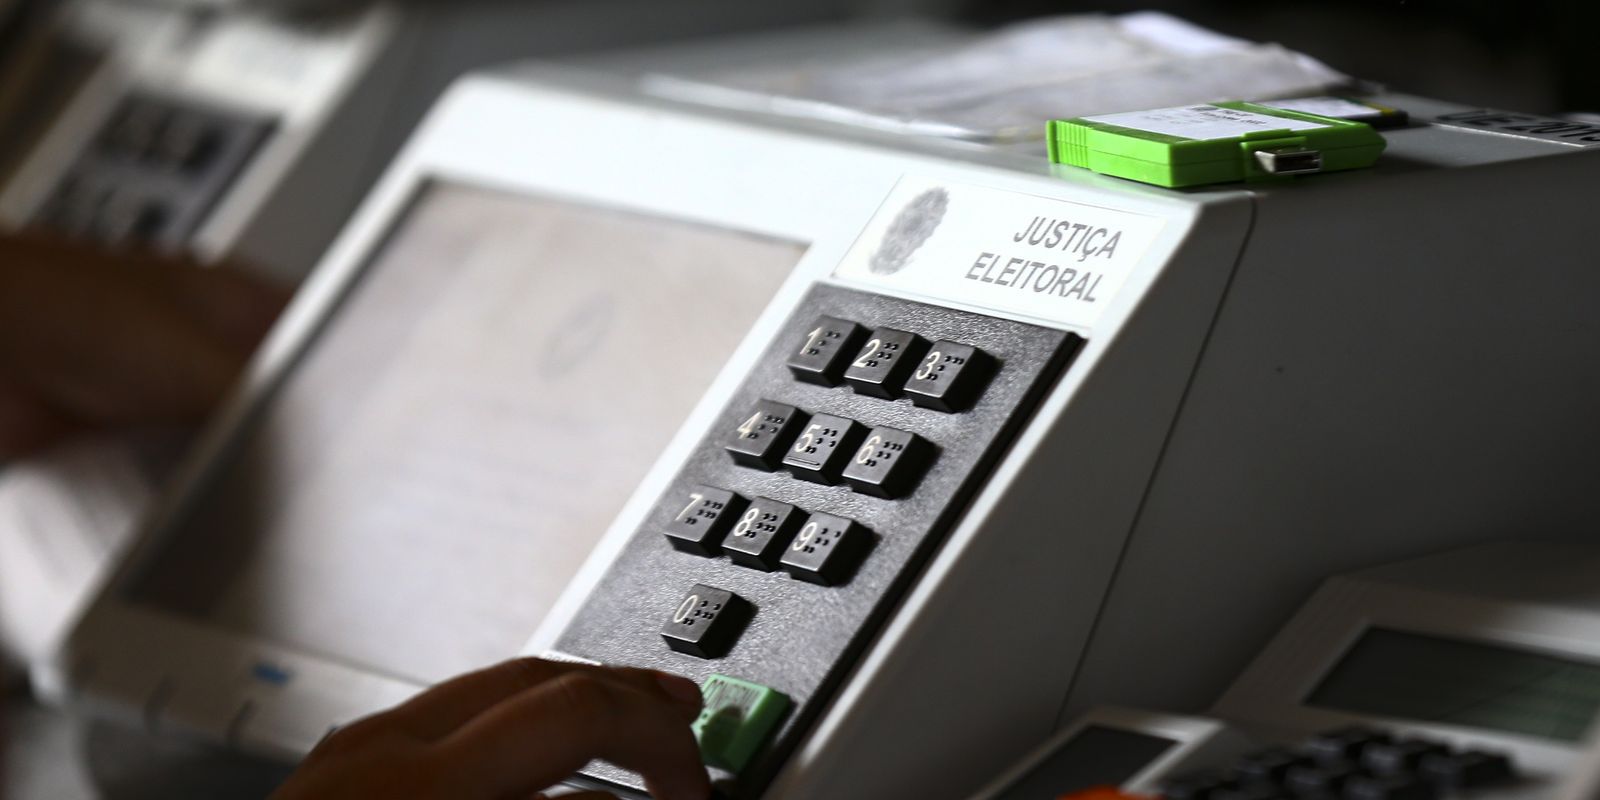 Testes em urnas eletrônicas confirmam que sistema de votação é seguro